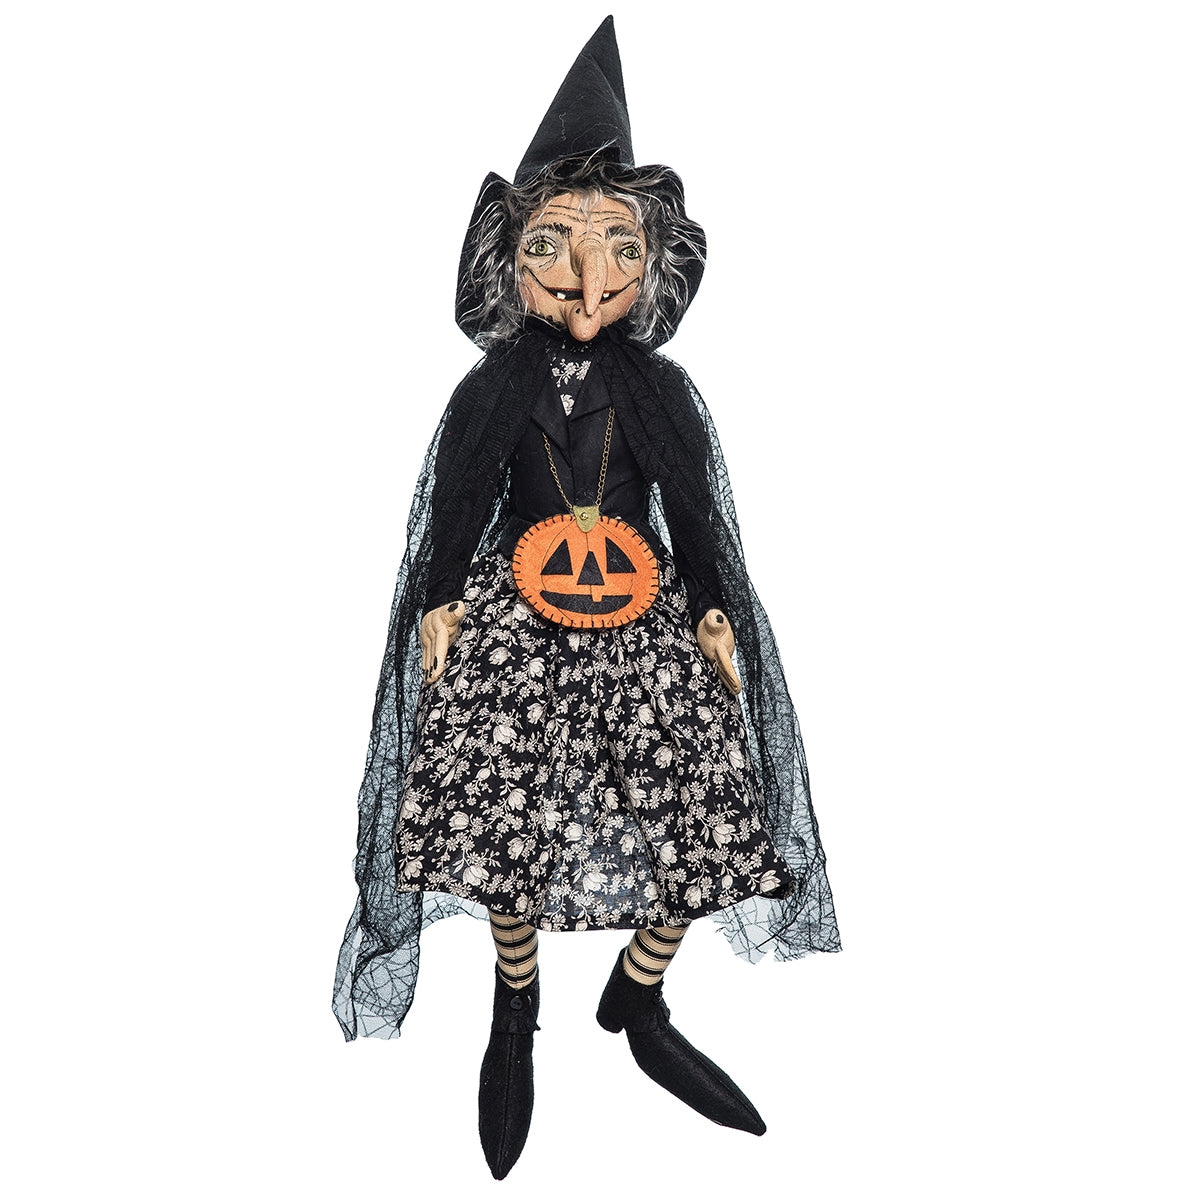 Hazel Witch Doll by Joe Spencer